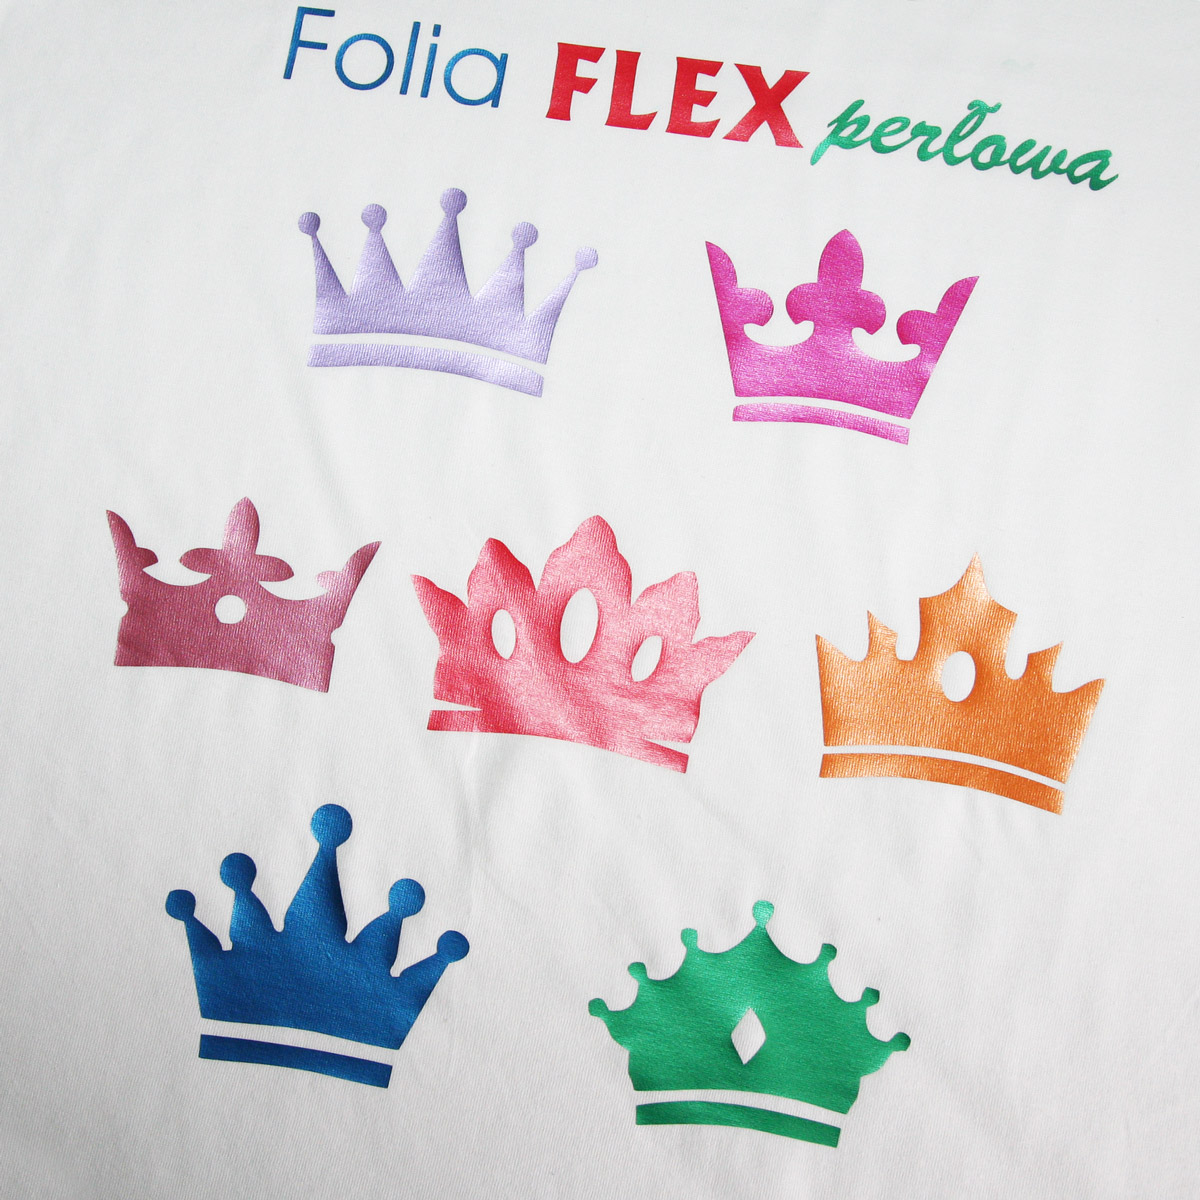 Folia Flex perłowa